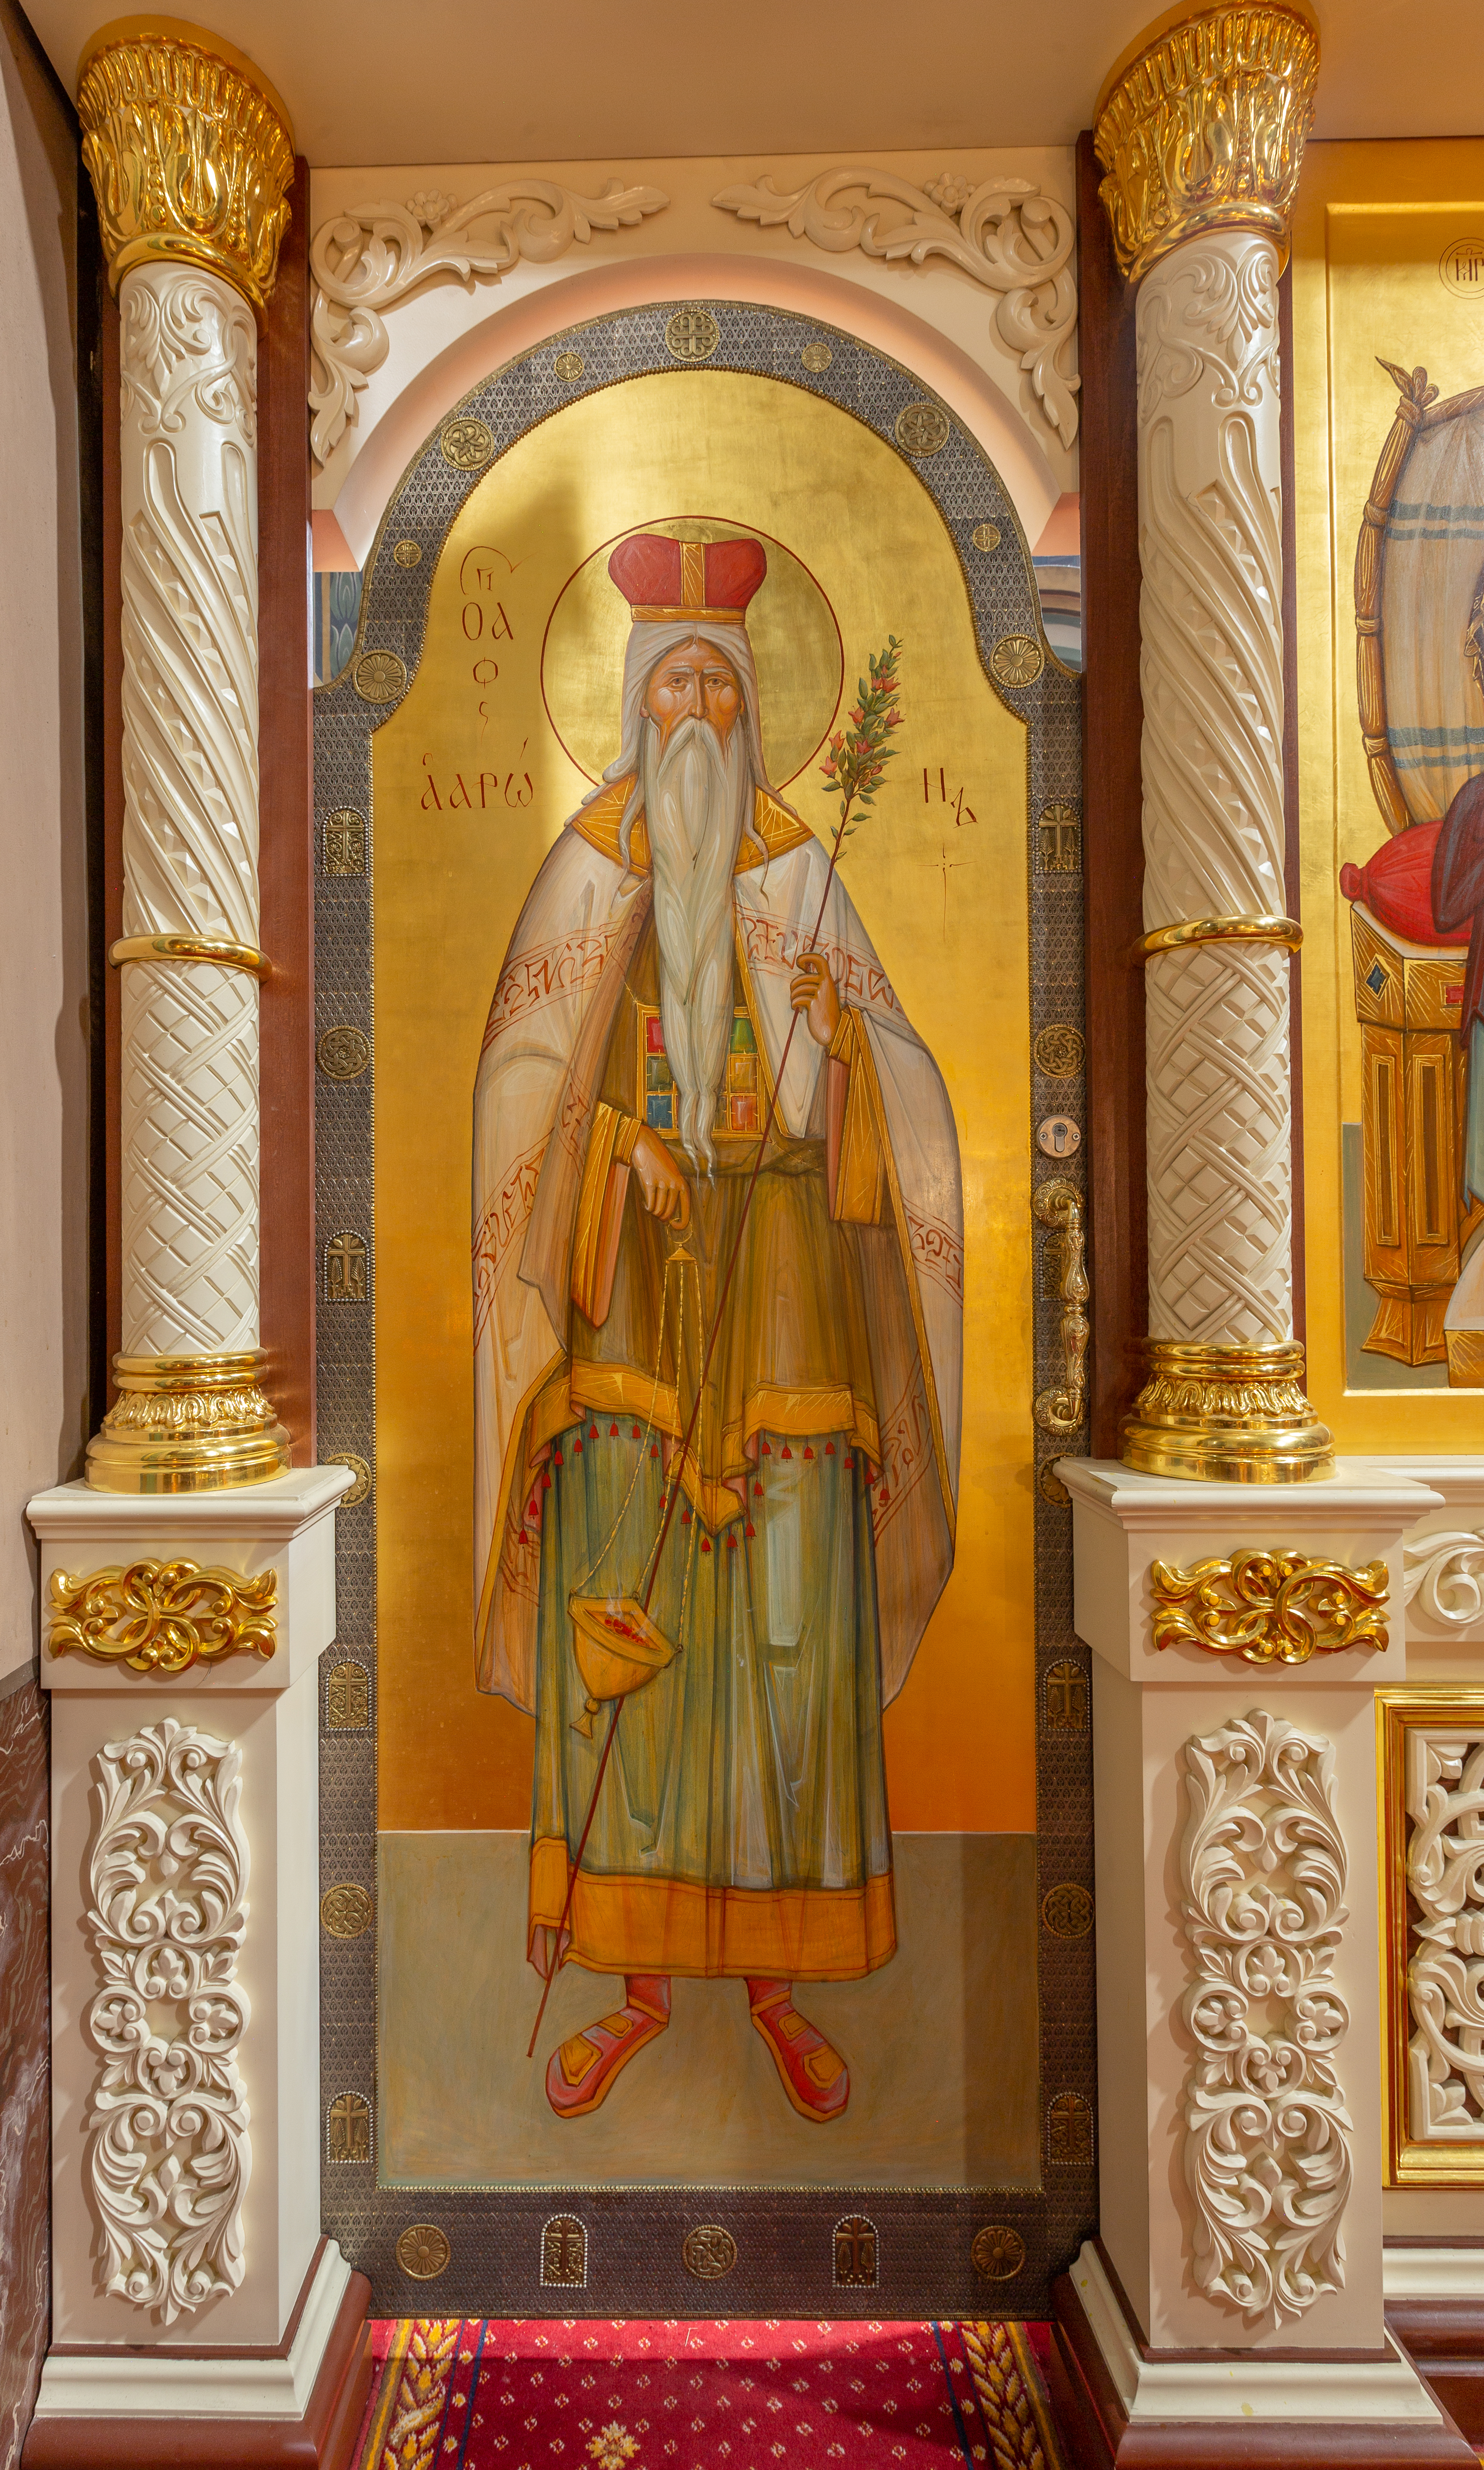 Установлен иконостас в храме "Утоли Мои Печали" в Марьино, г. Москва